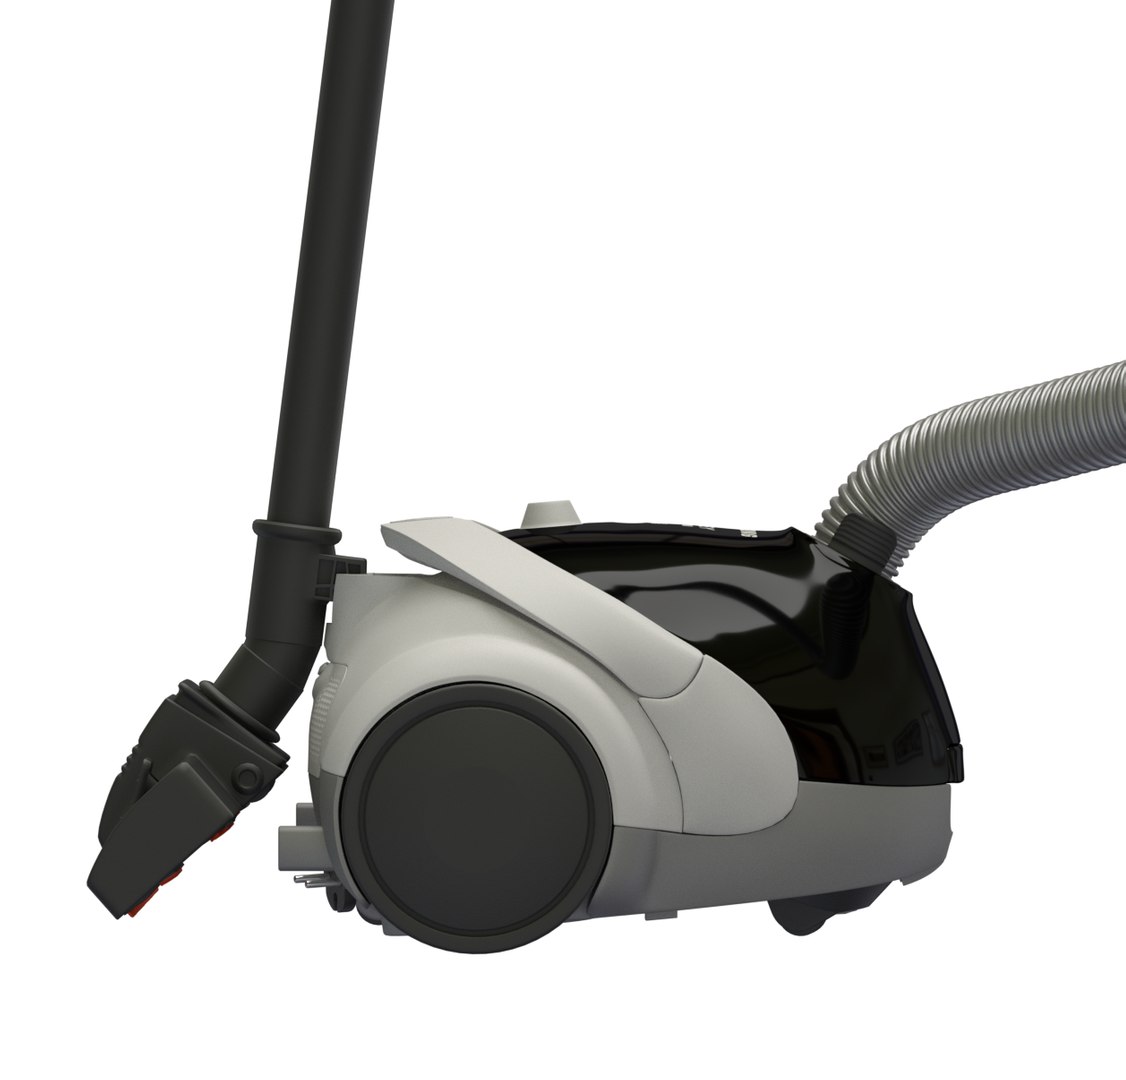 Varken Alstublieft Bezit vacuum cleaner 3d model